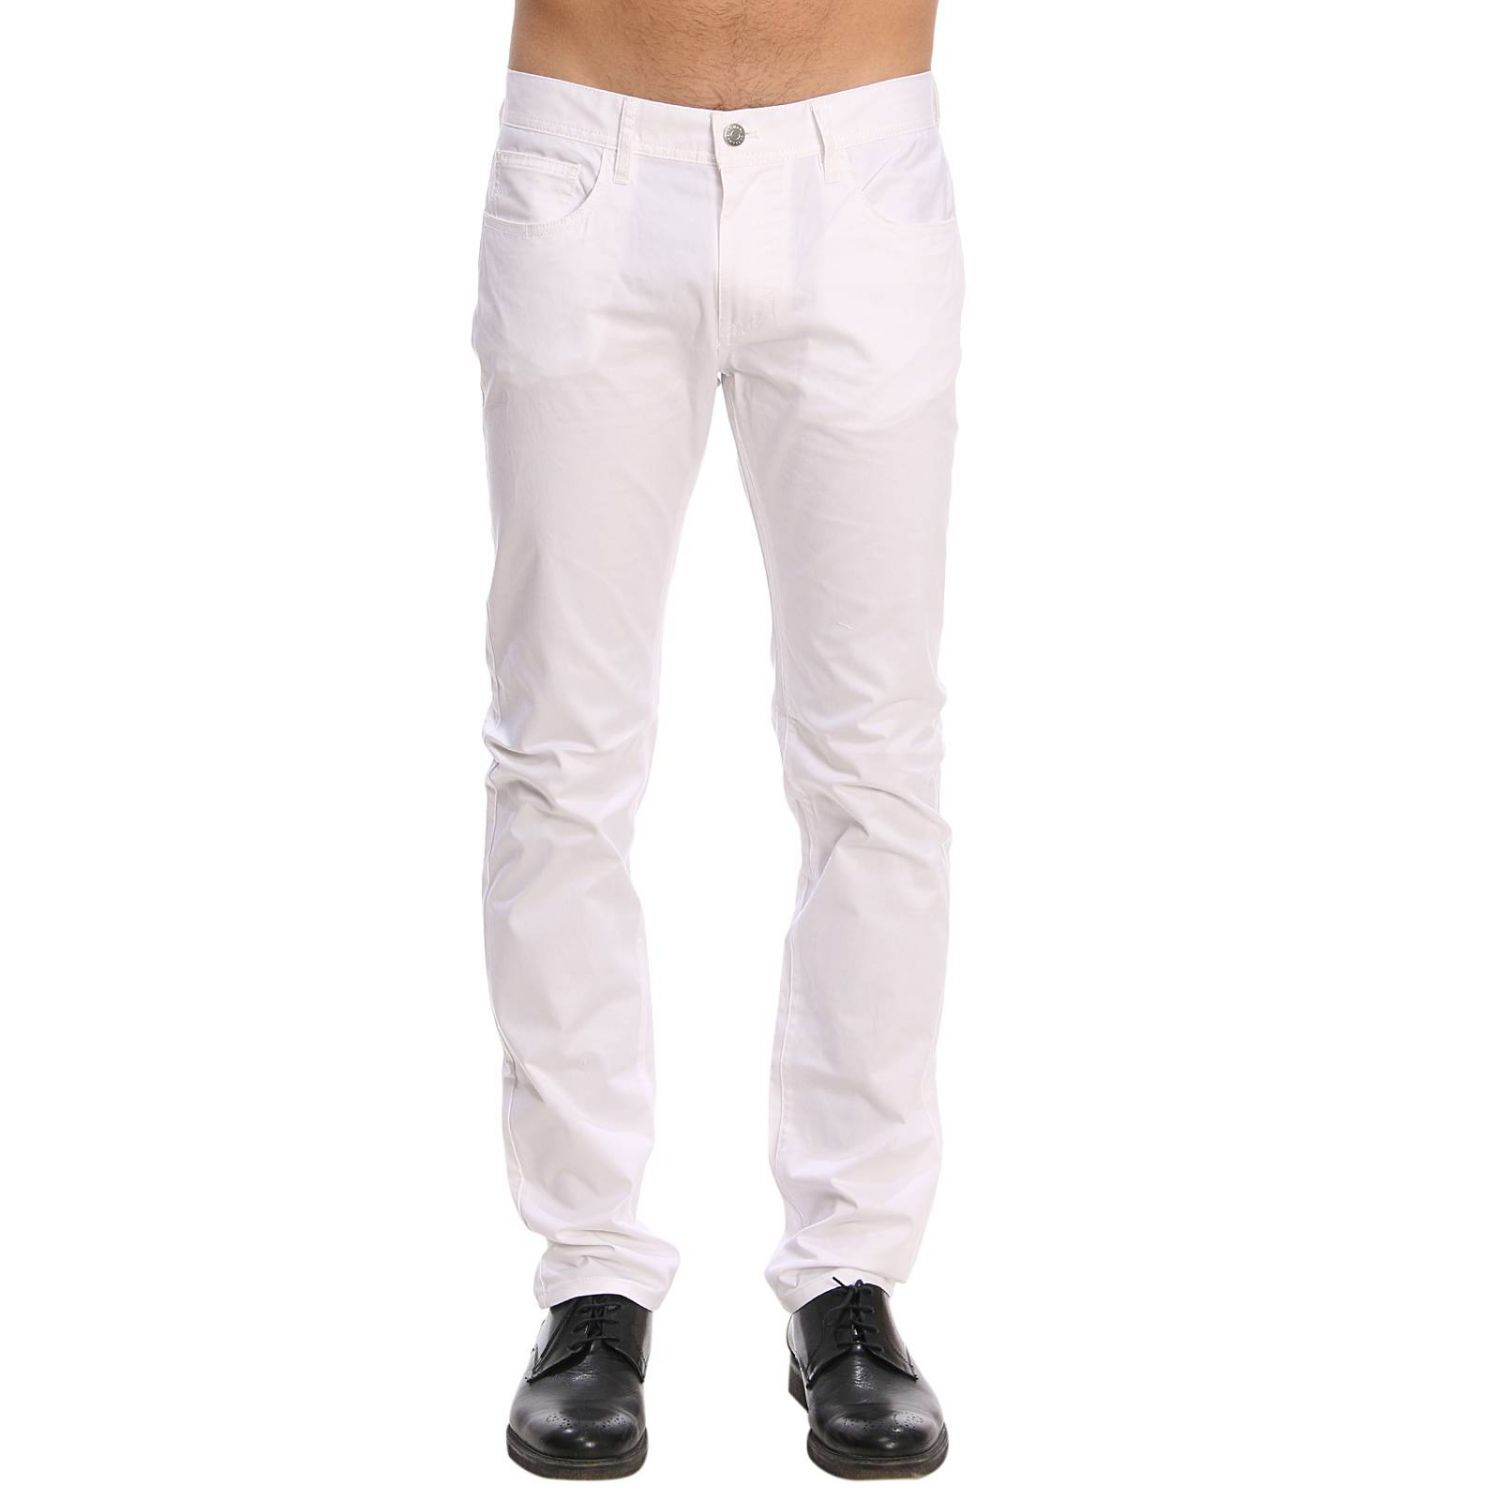 Armani Exchange Outlet: Pants men | Pants Armani Exchange Men White ...